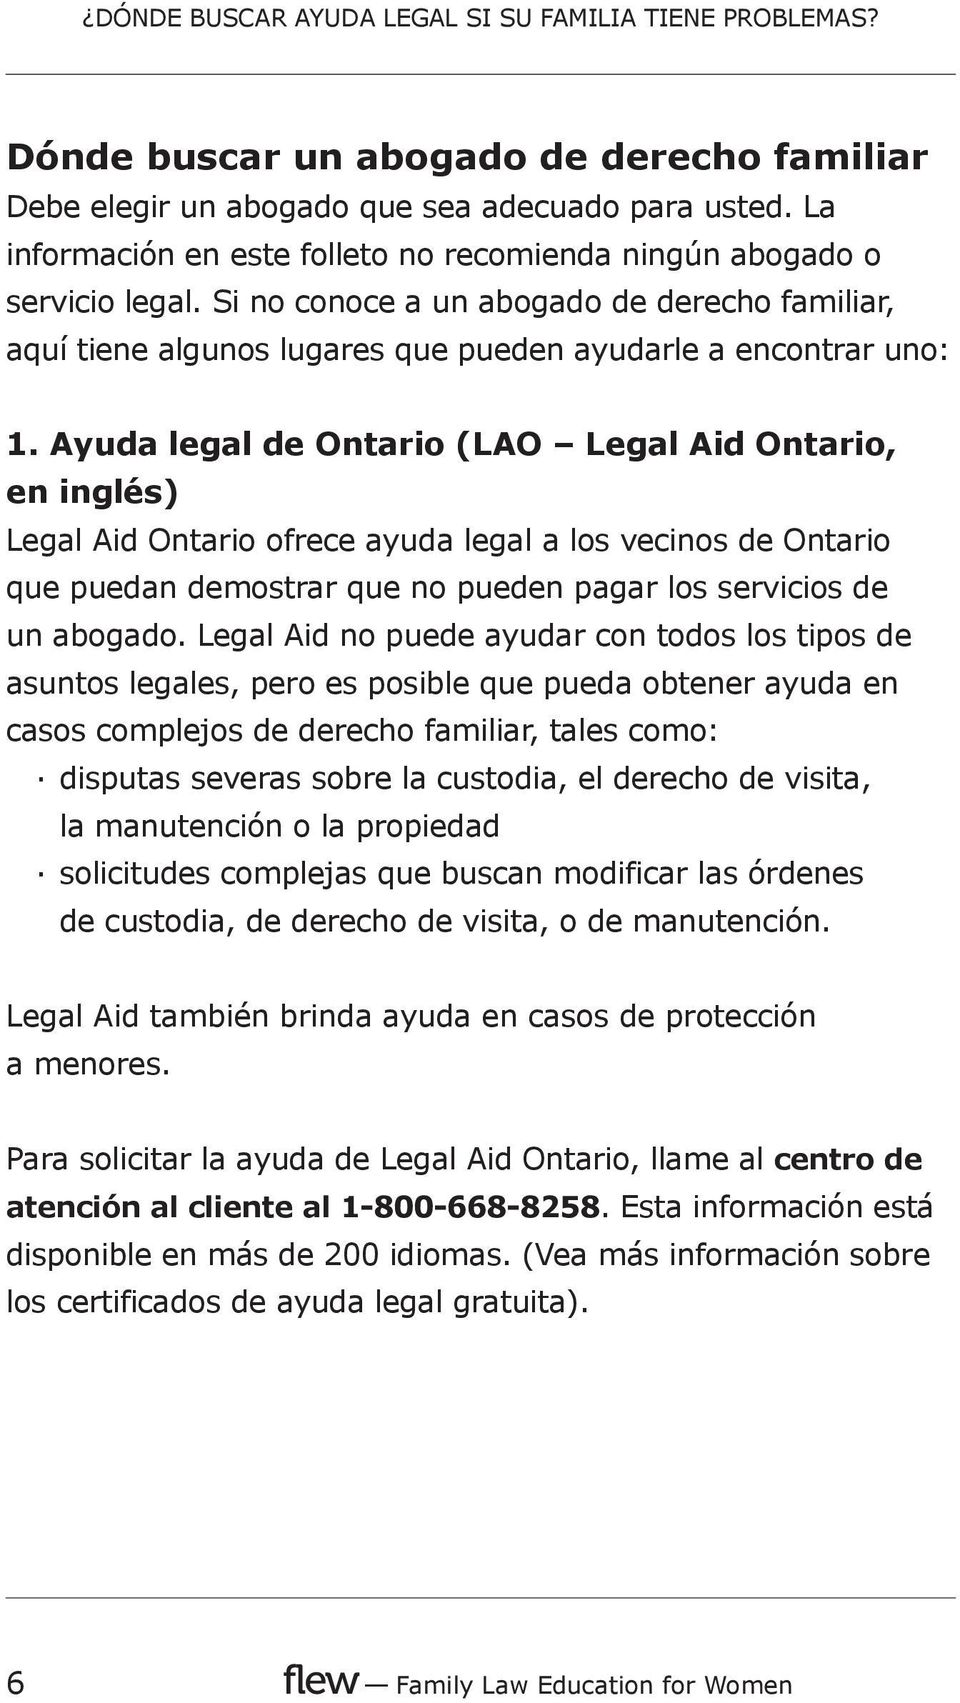 Ayuda legal de Ontario (LAO Legal Aid Ontario, en inglés) Legal Aid Ontario ofrece ayuda legal a los vecinos de Ontario que puedan demostrar que no pueden pagar los servicios de un abogado.